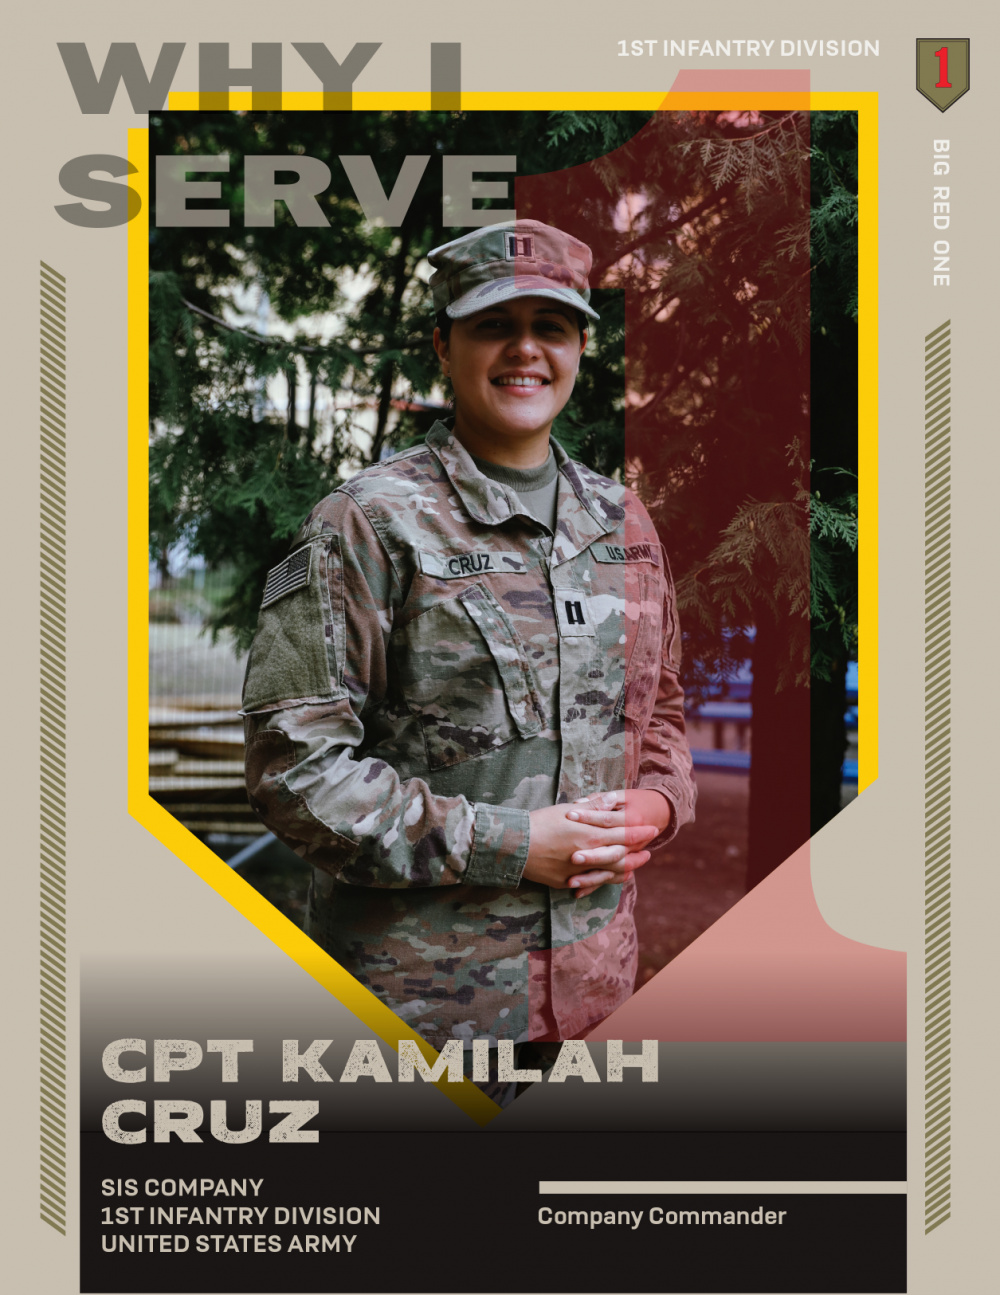 Why I serve - Capt. Kamilah Cruz